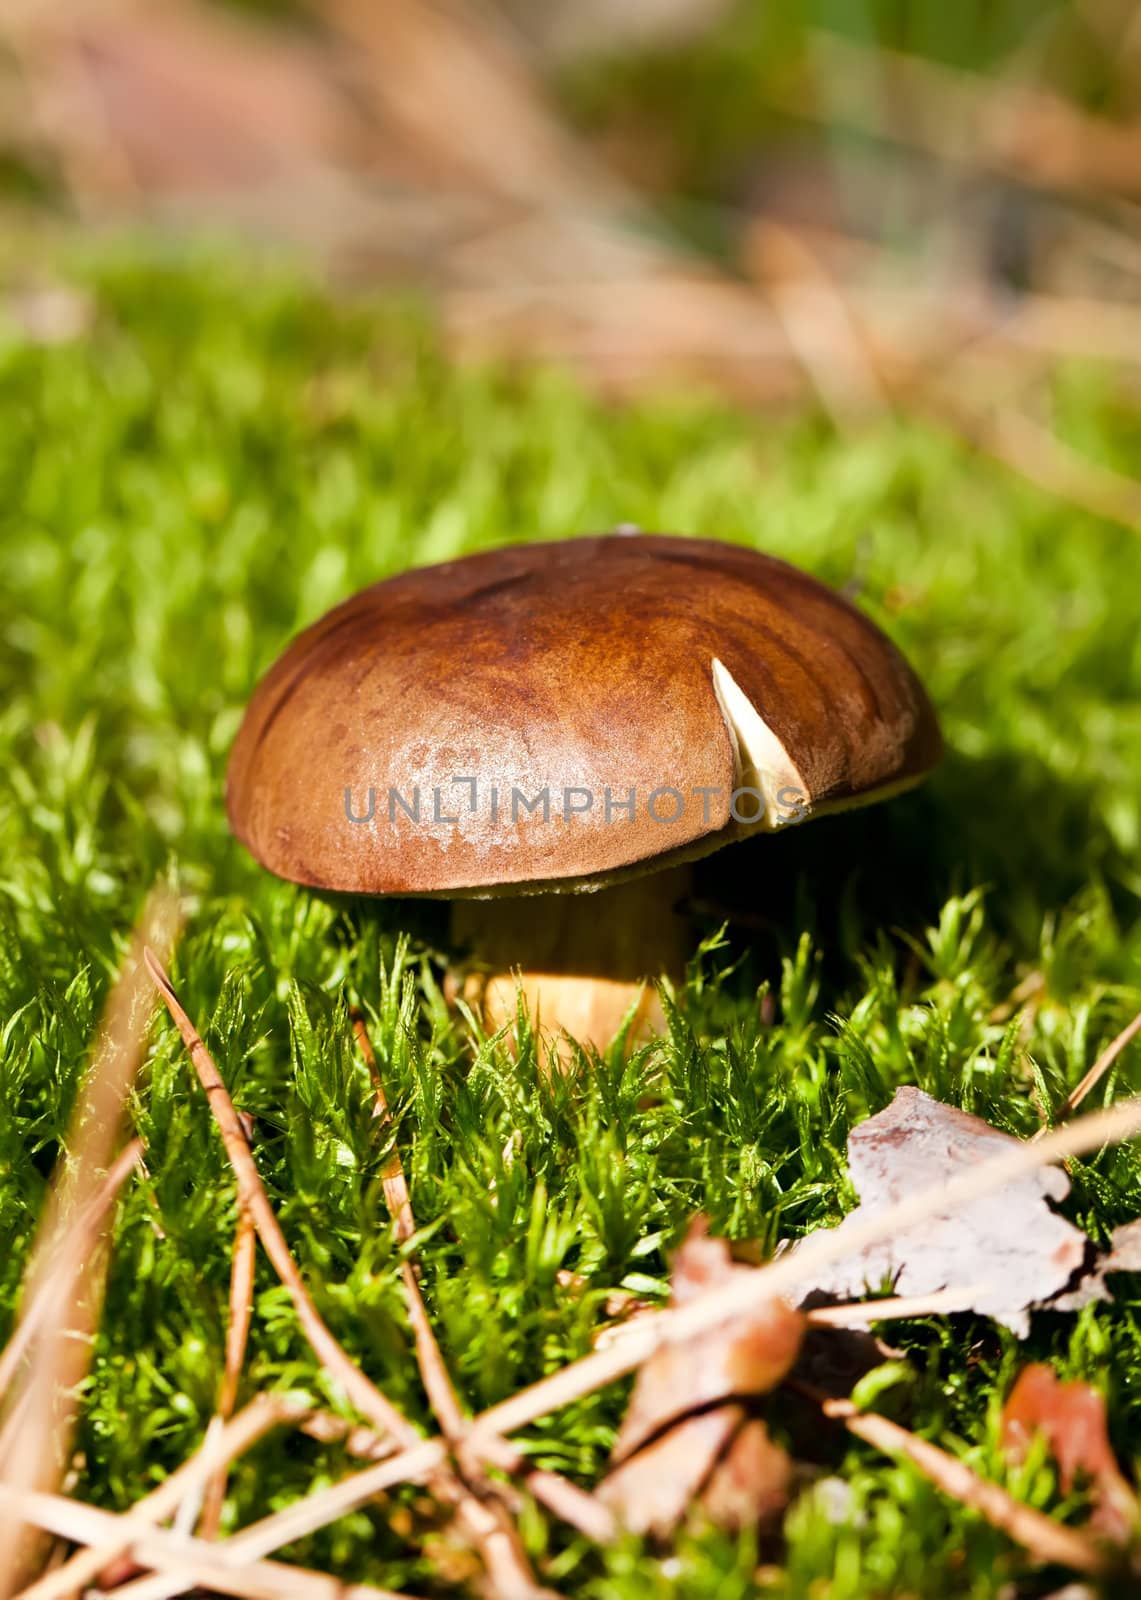 Brown cep mushroom in green moss by RawGroup